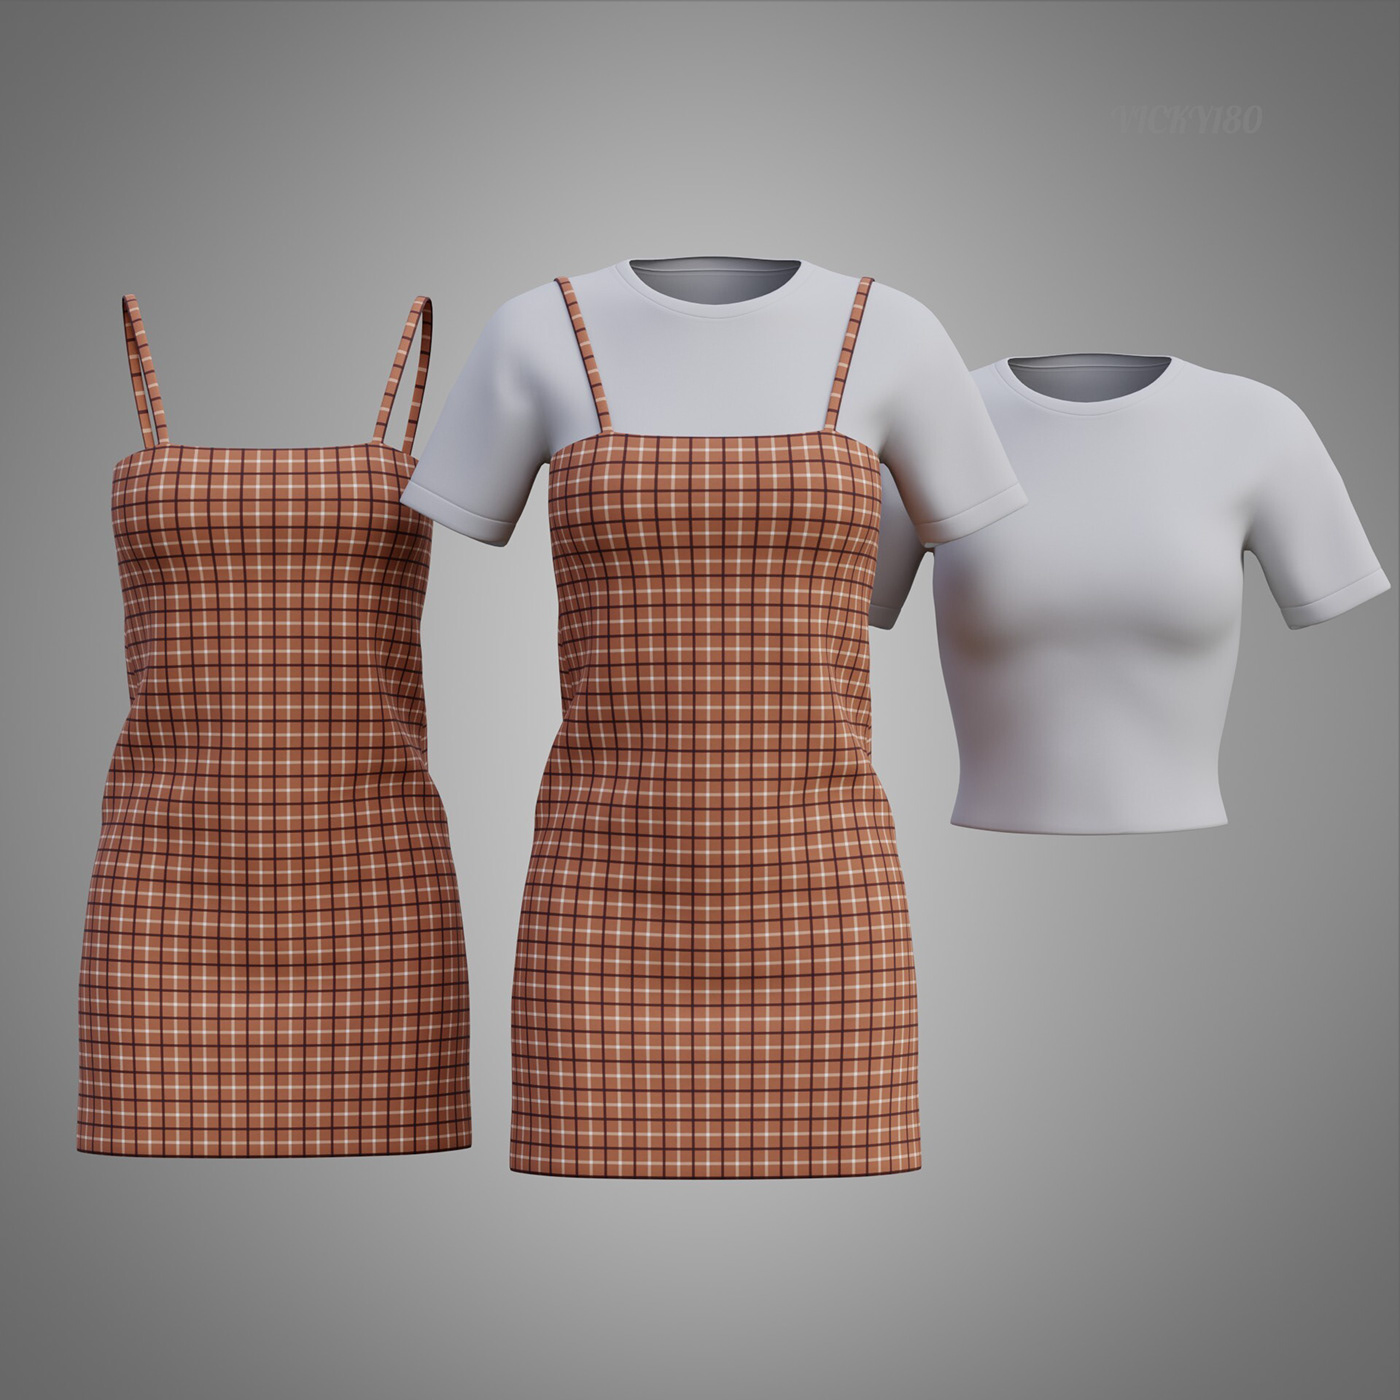 plaid design Fashion  model woman ladies girls 3D model 3d outfit 3d t-shirt plaid camisole dress